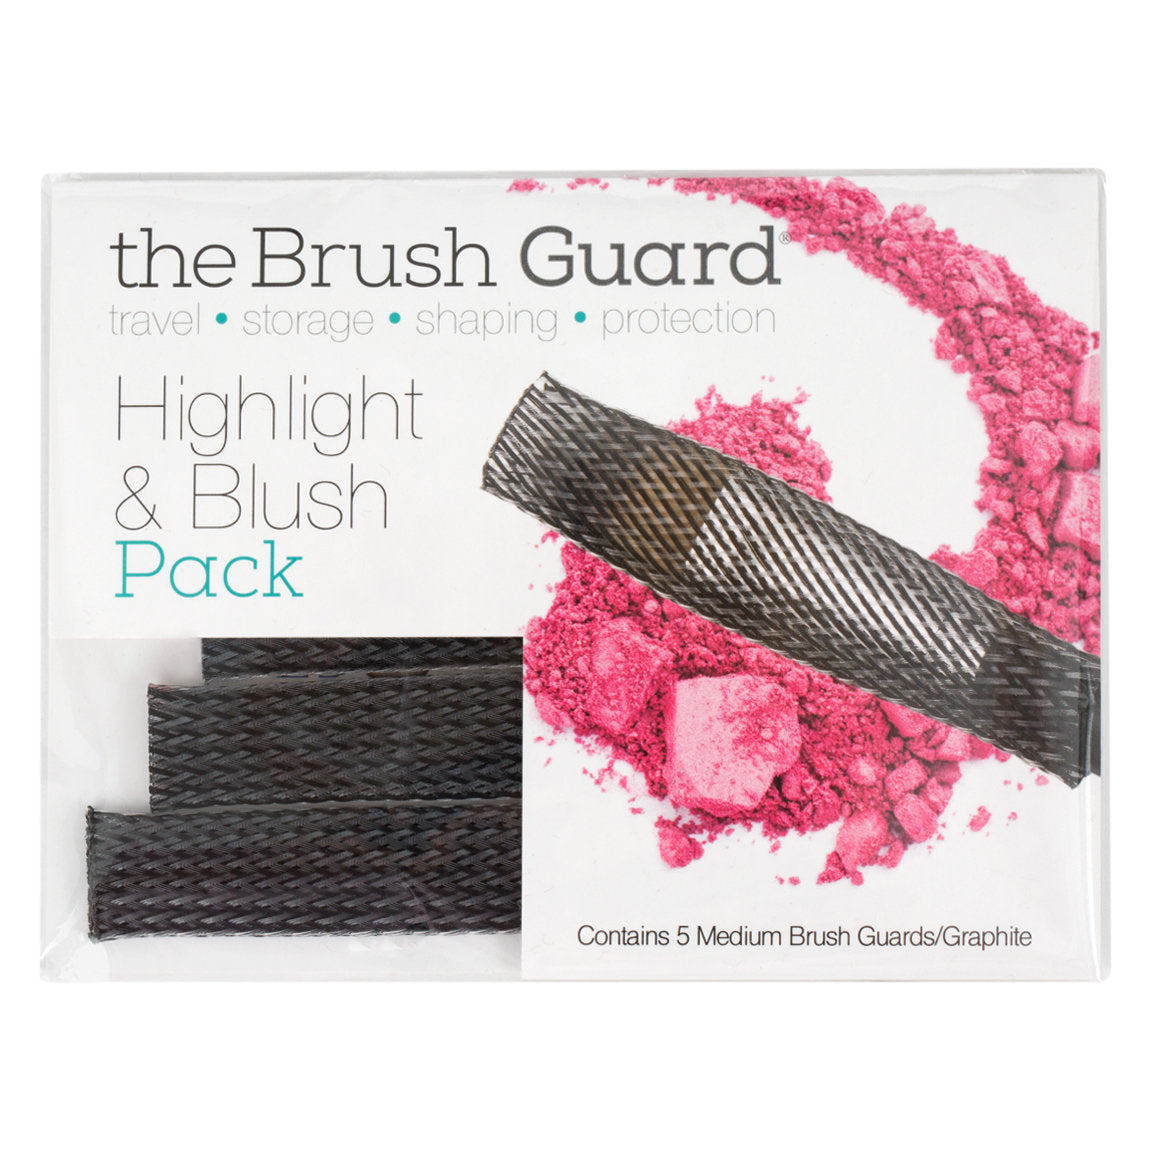 Highlight & Blush Pack Graphite